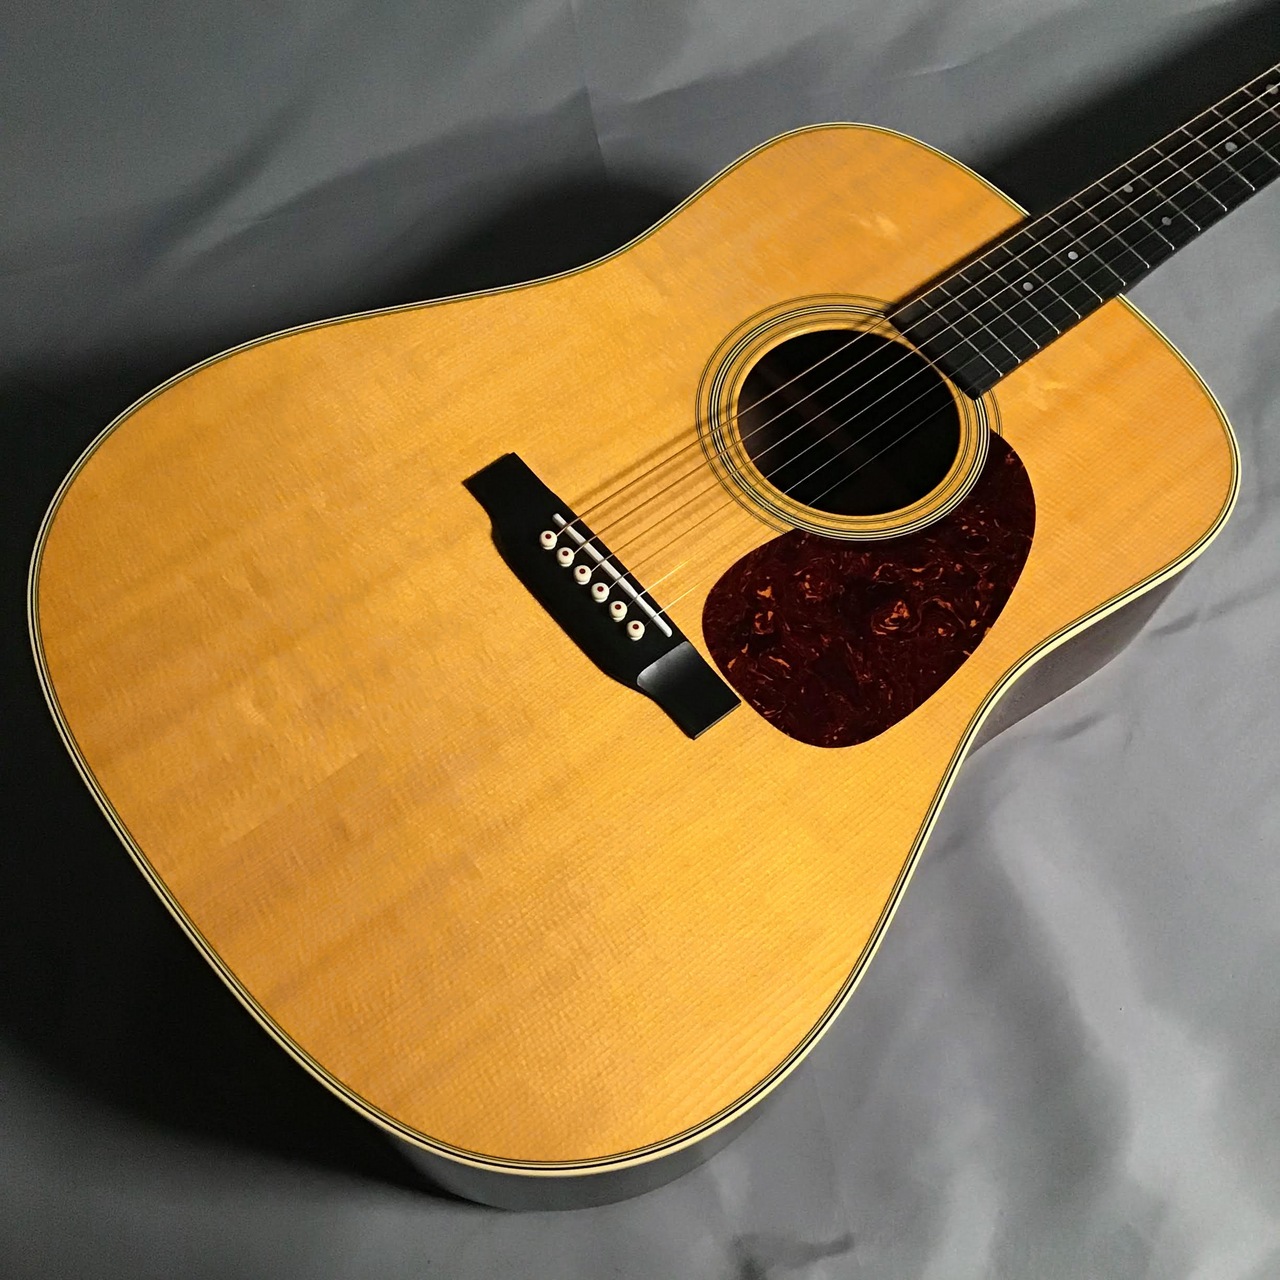 アコースティックギター【Martin】D-28 Standard